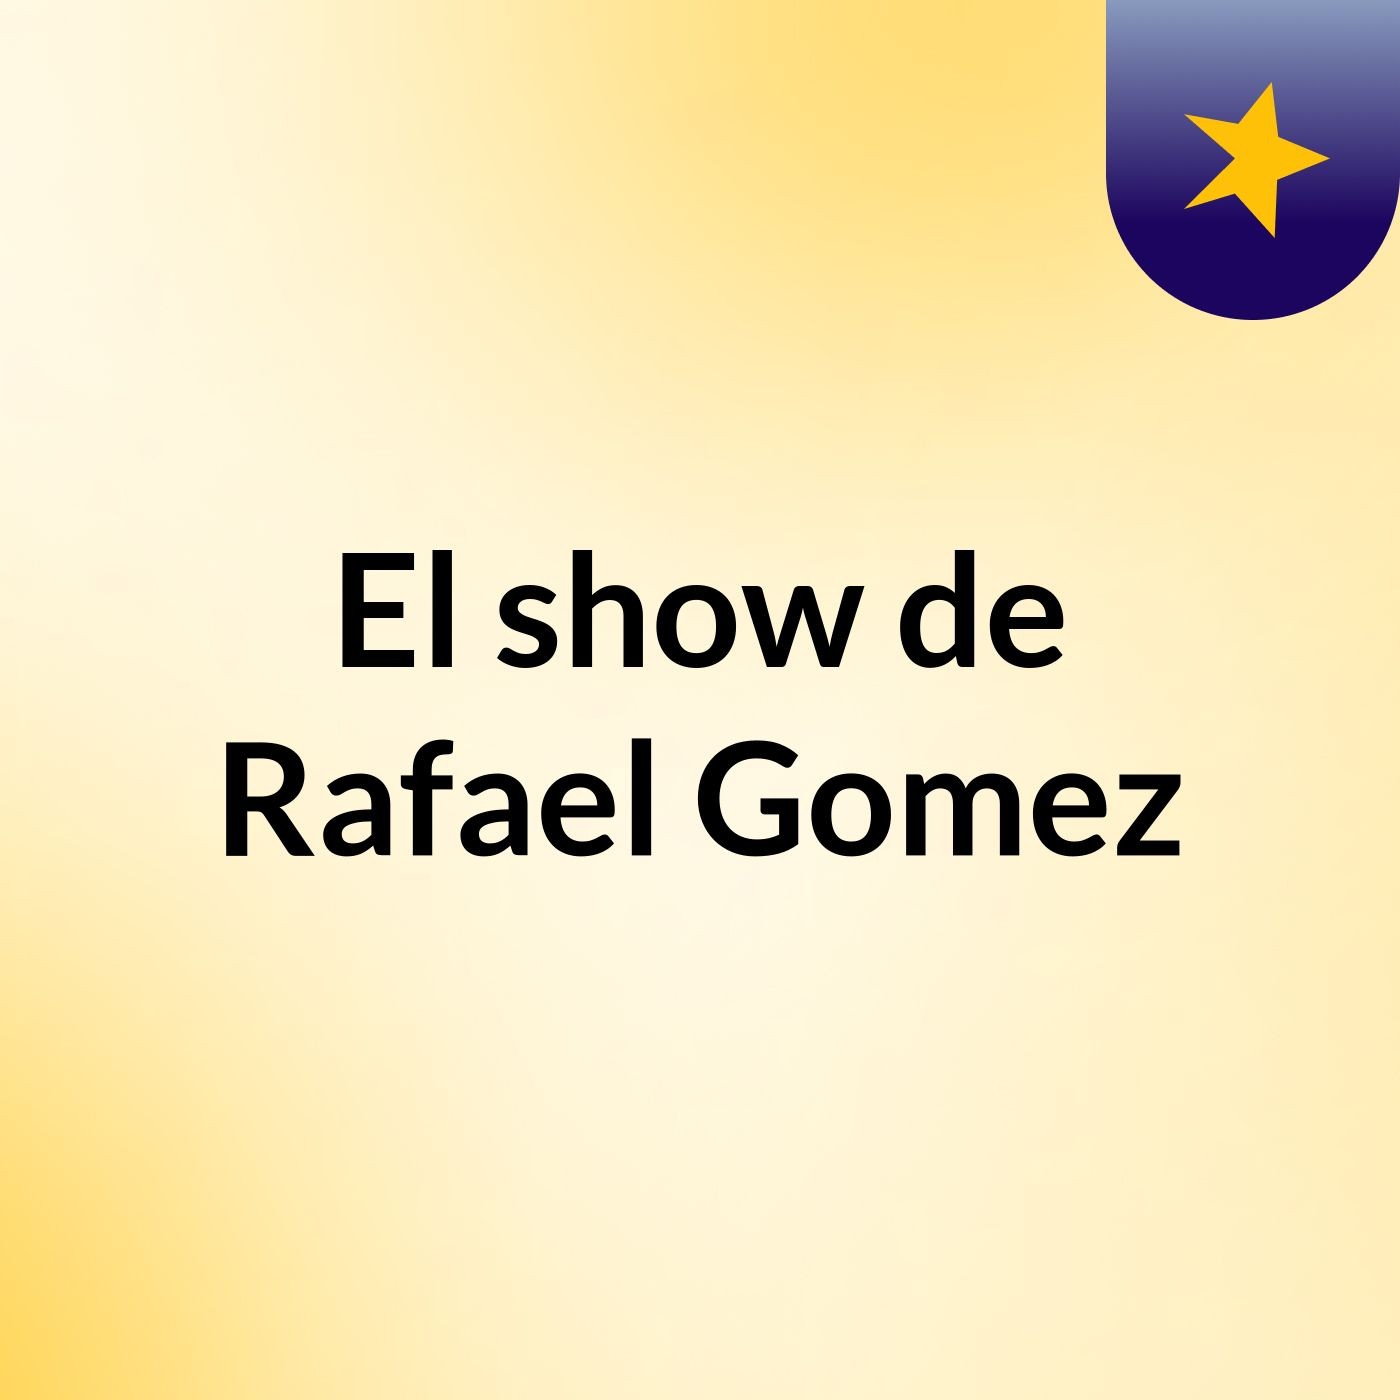 El show de Rafael Gomez